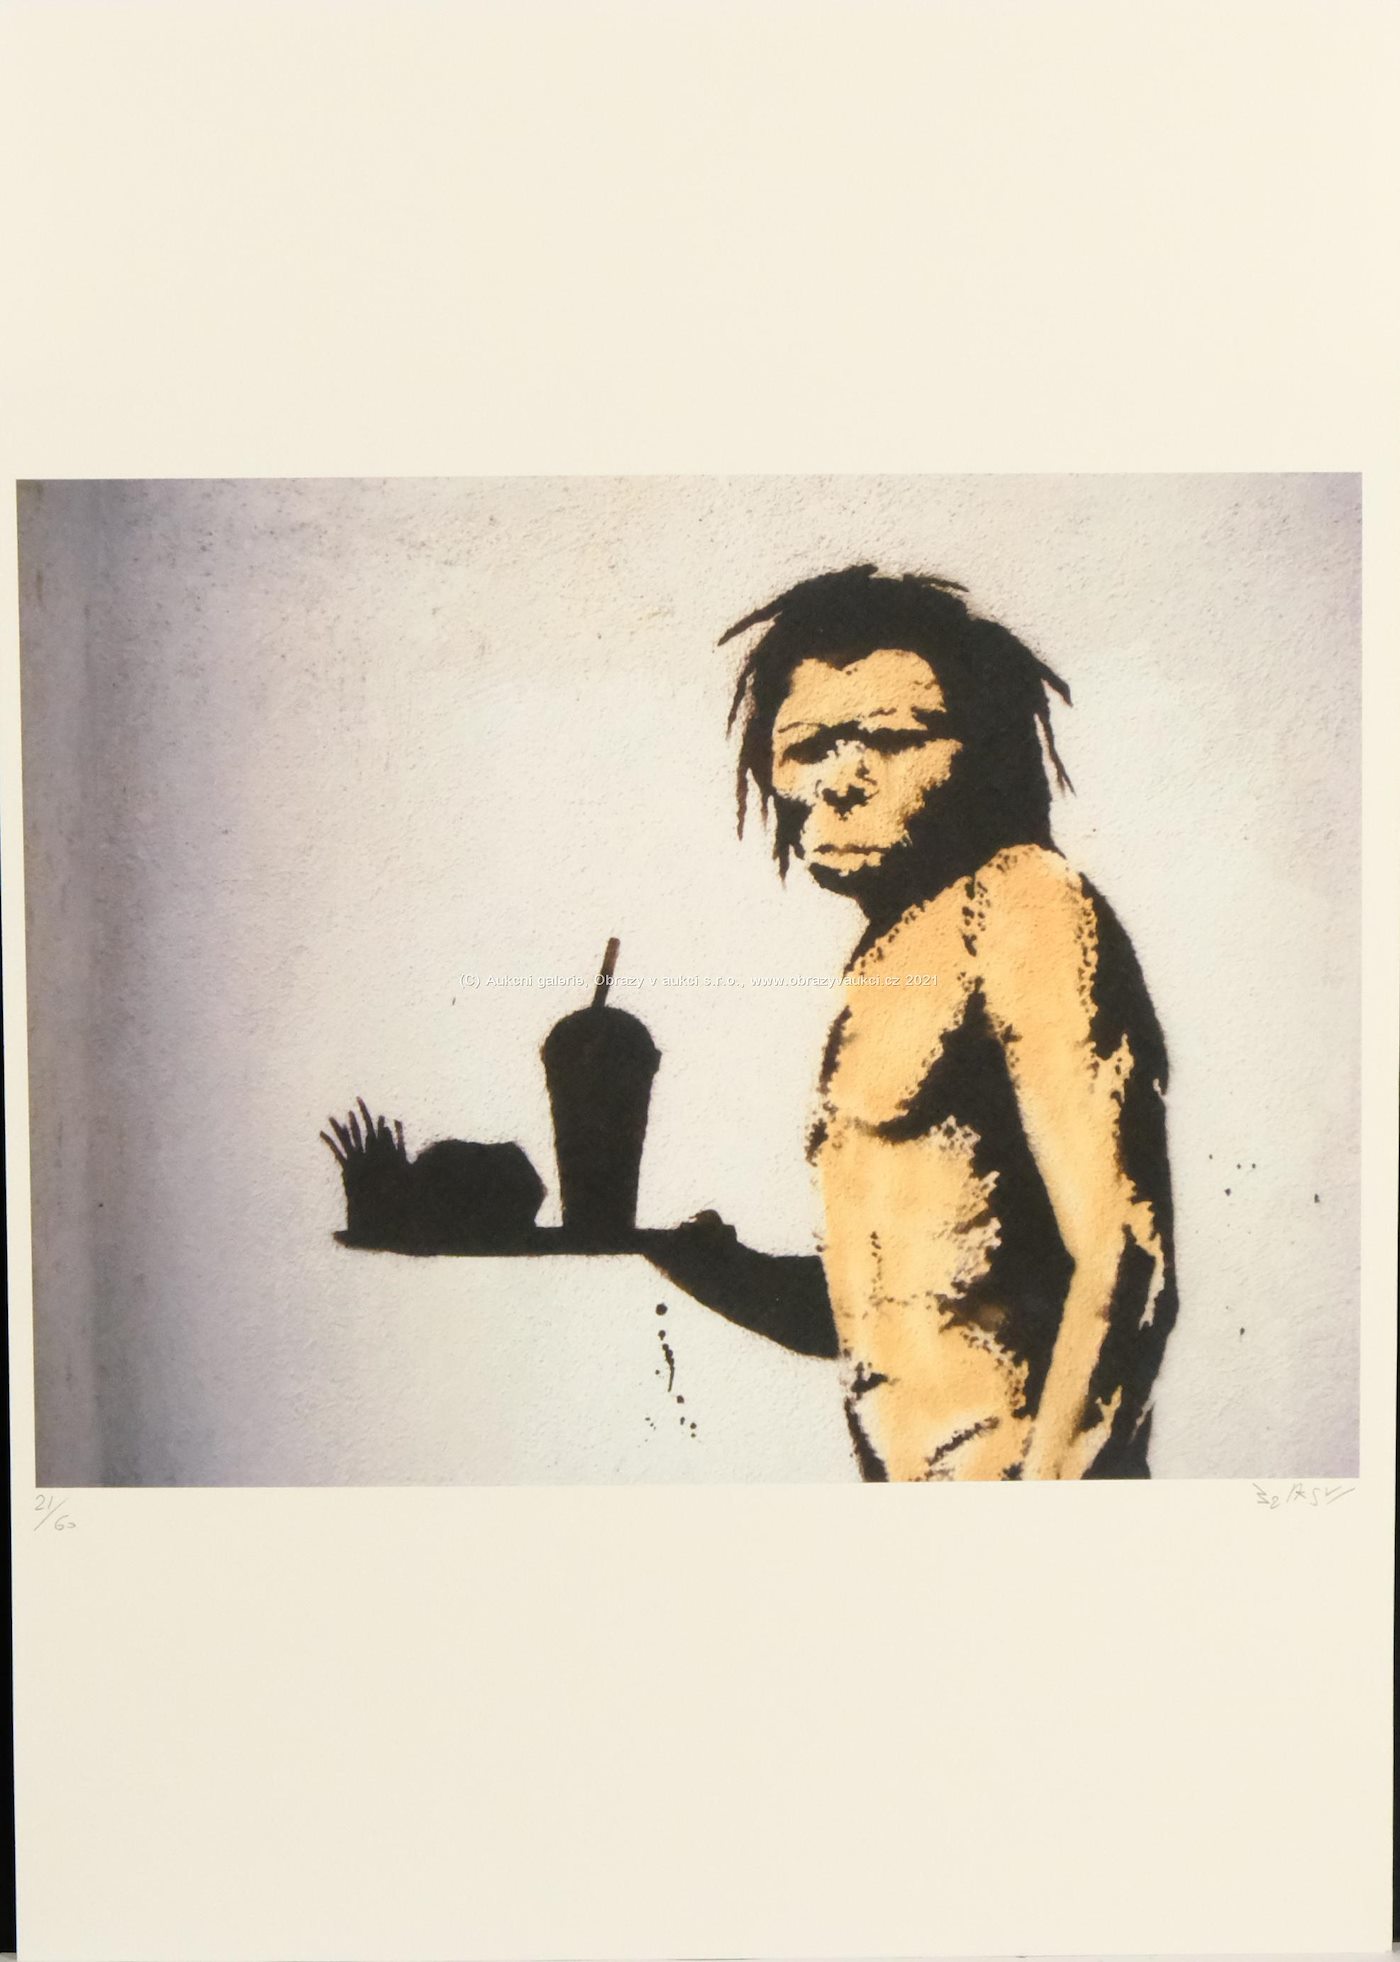 Banksy - Fast Food Neanderthal Man